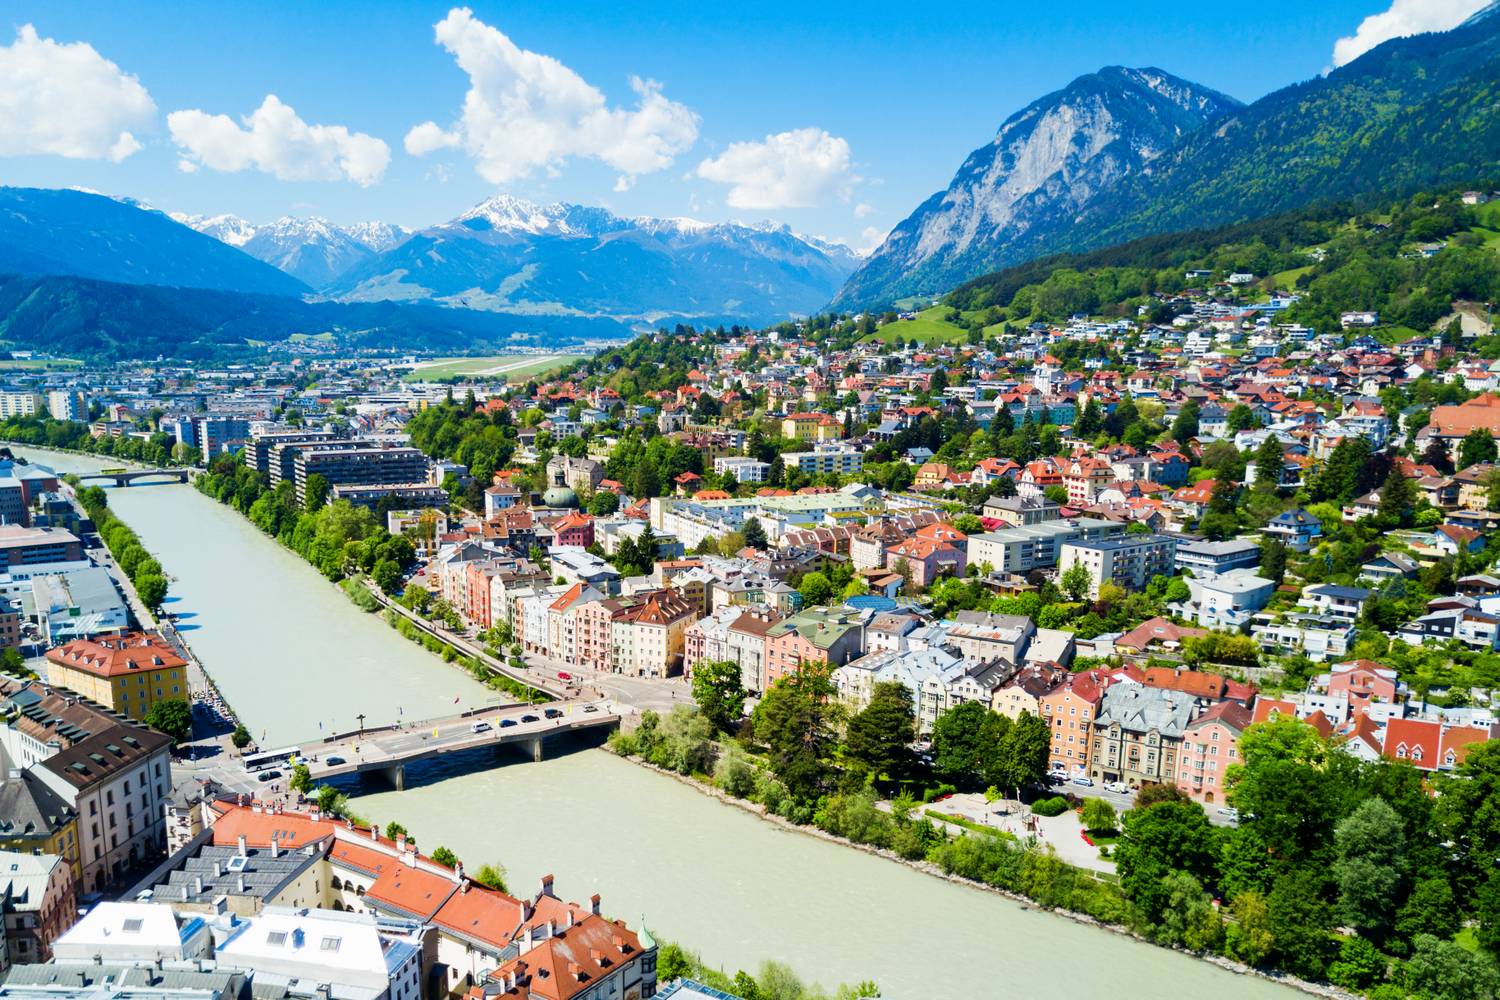 Innsbruck városképét meghatározzák az alpesi vonulatok, amelyek körbeölelik utcáit, és az Inn folyó, melyről a nevét is kapta. Főpályaudvara a belvárosban található, így a vonat begördülése után máris csodás helyek veszik körbe az érkezőket.